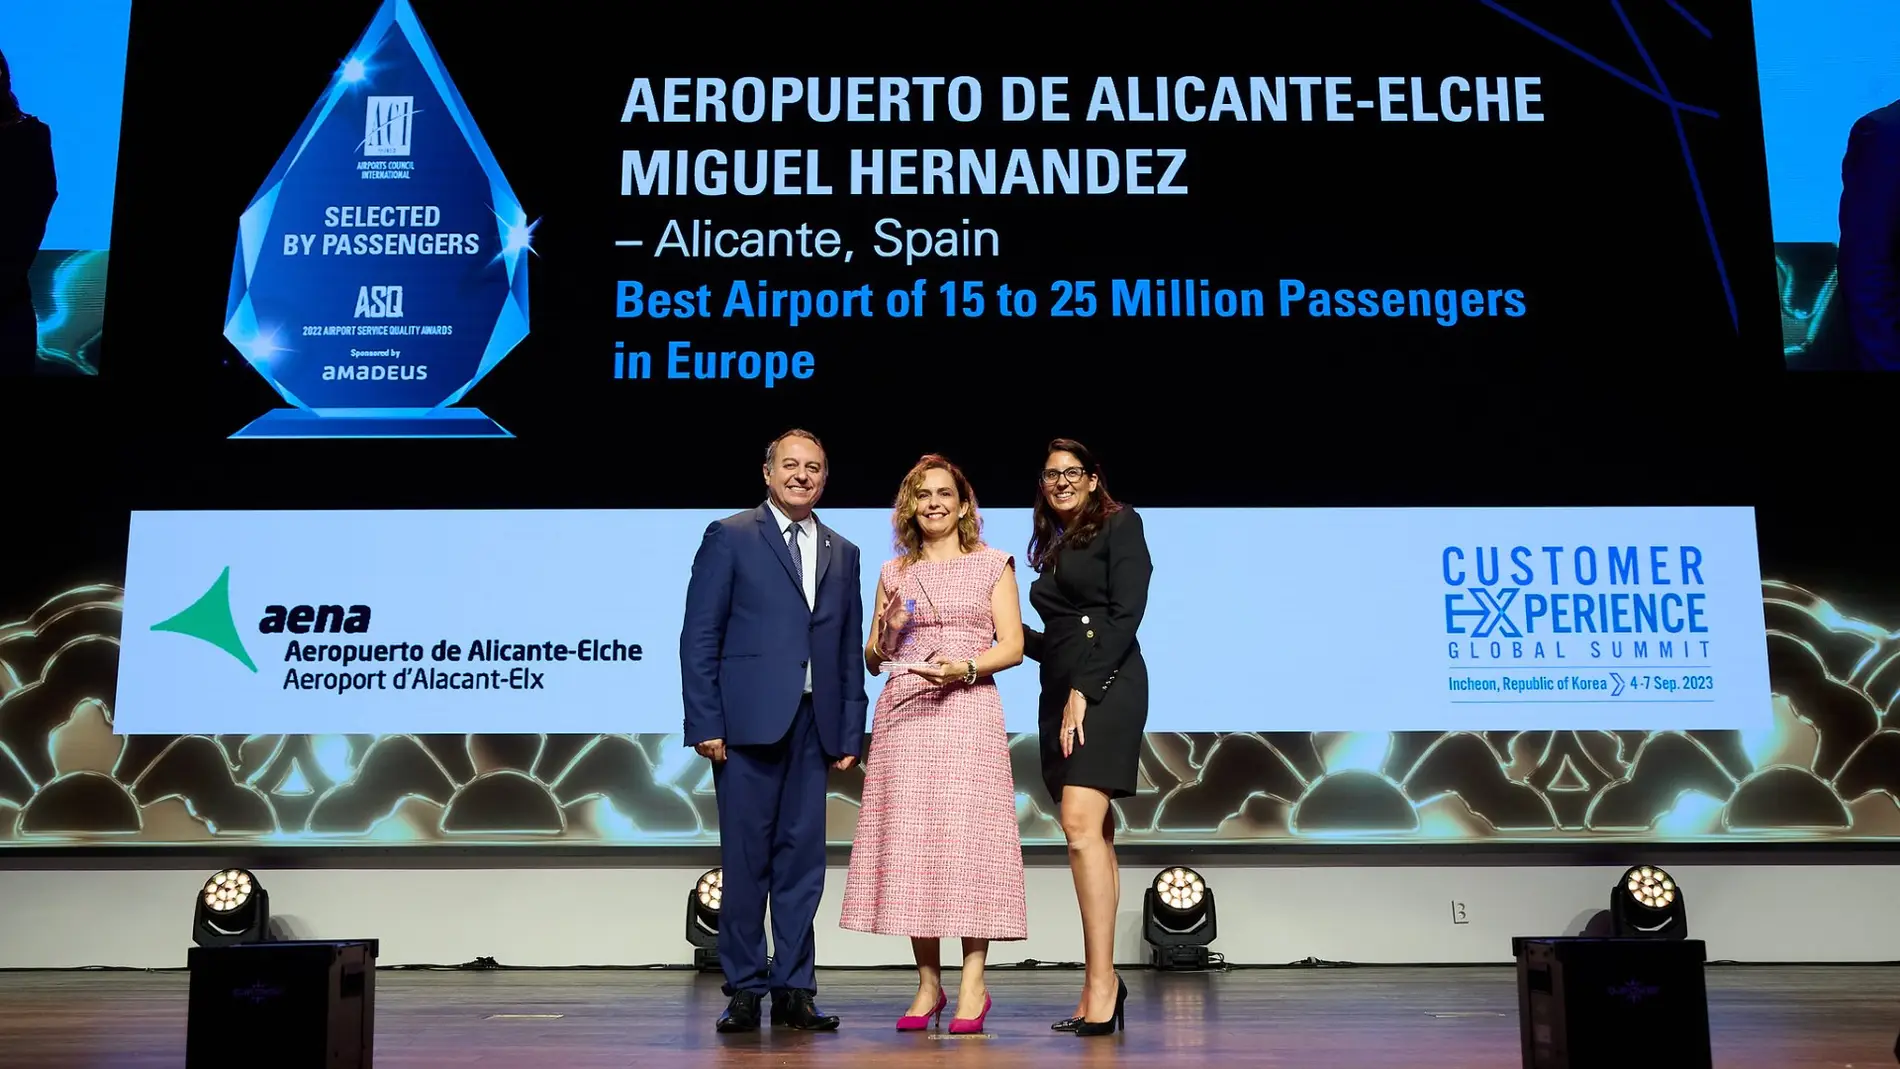 Laura Navarro (en el centro), director del Aeropuerto Alicante-Elche, tras recibir el premio en la gala celebrada en Corea del Sur.